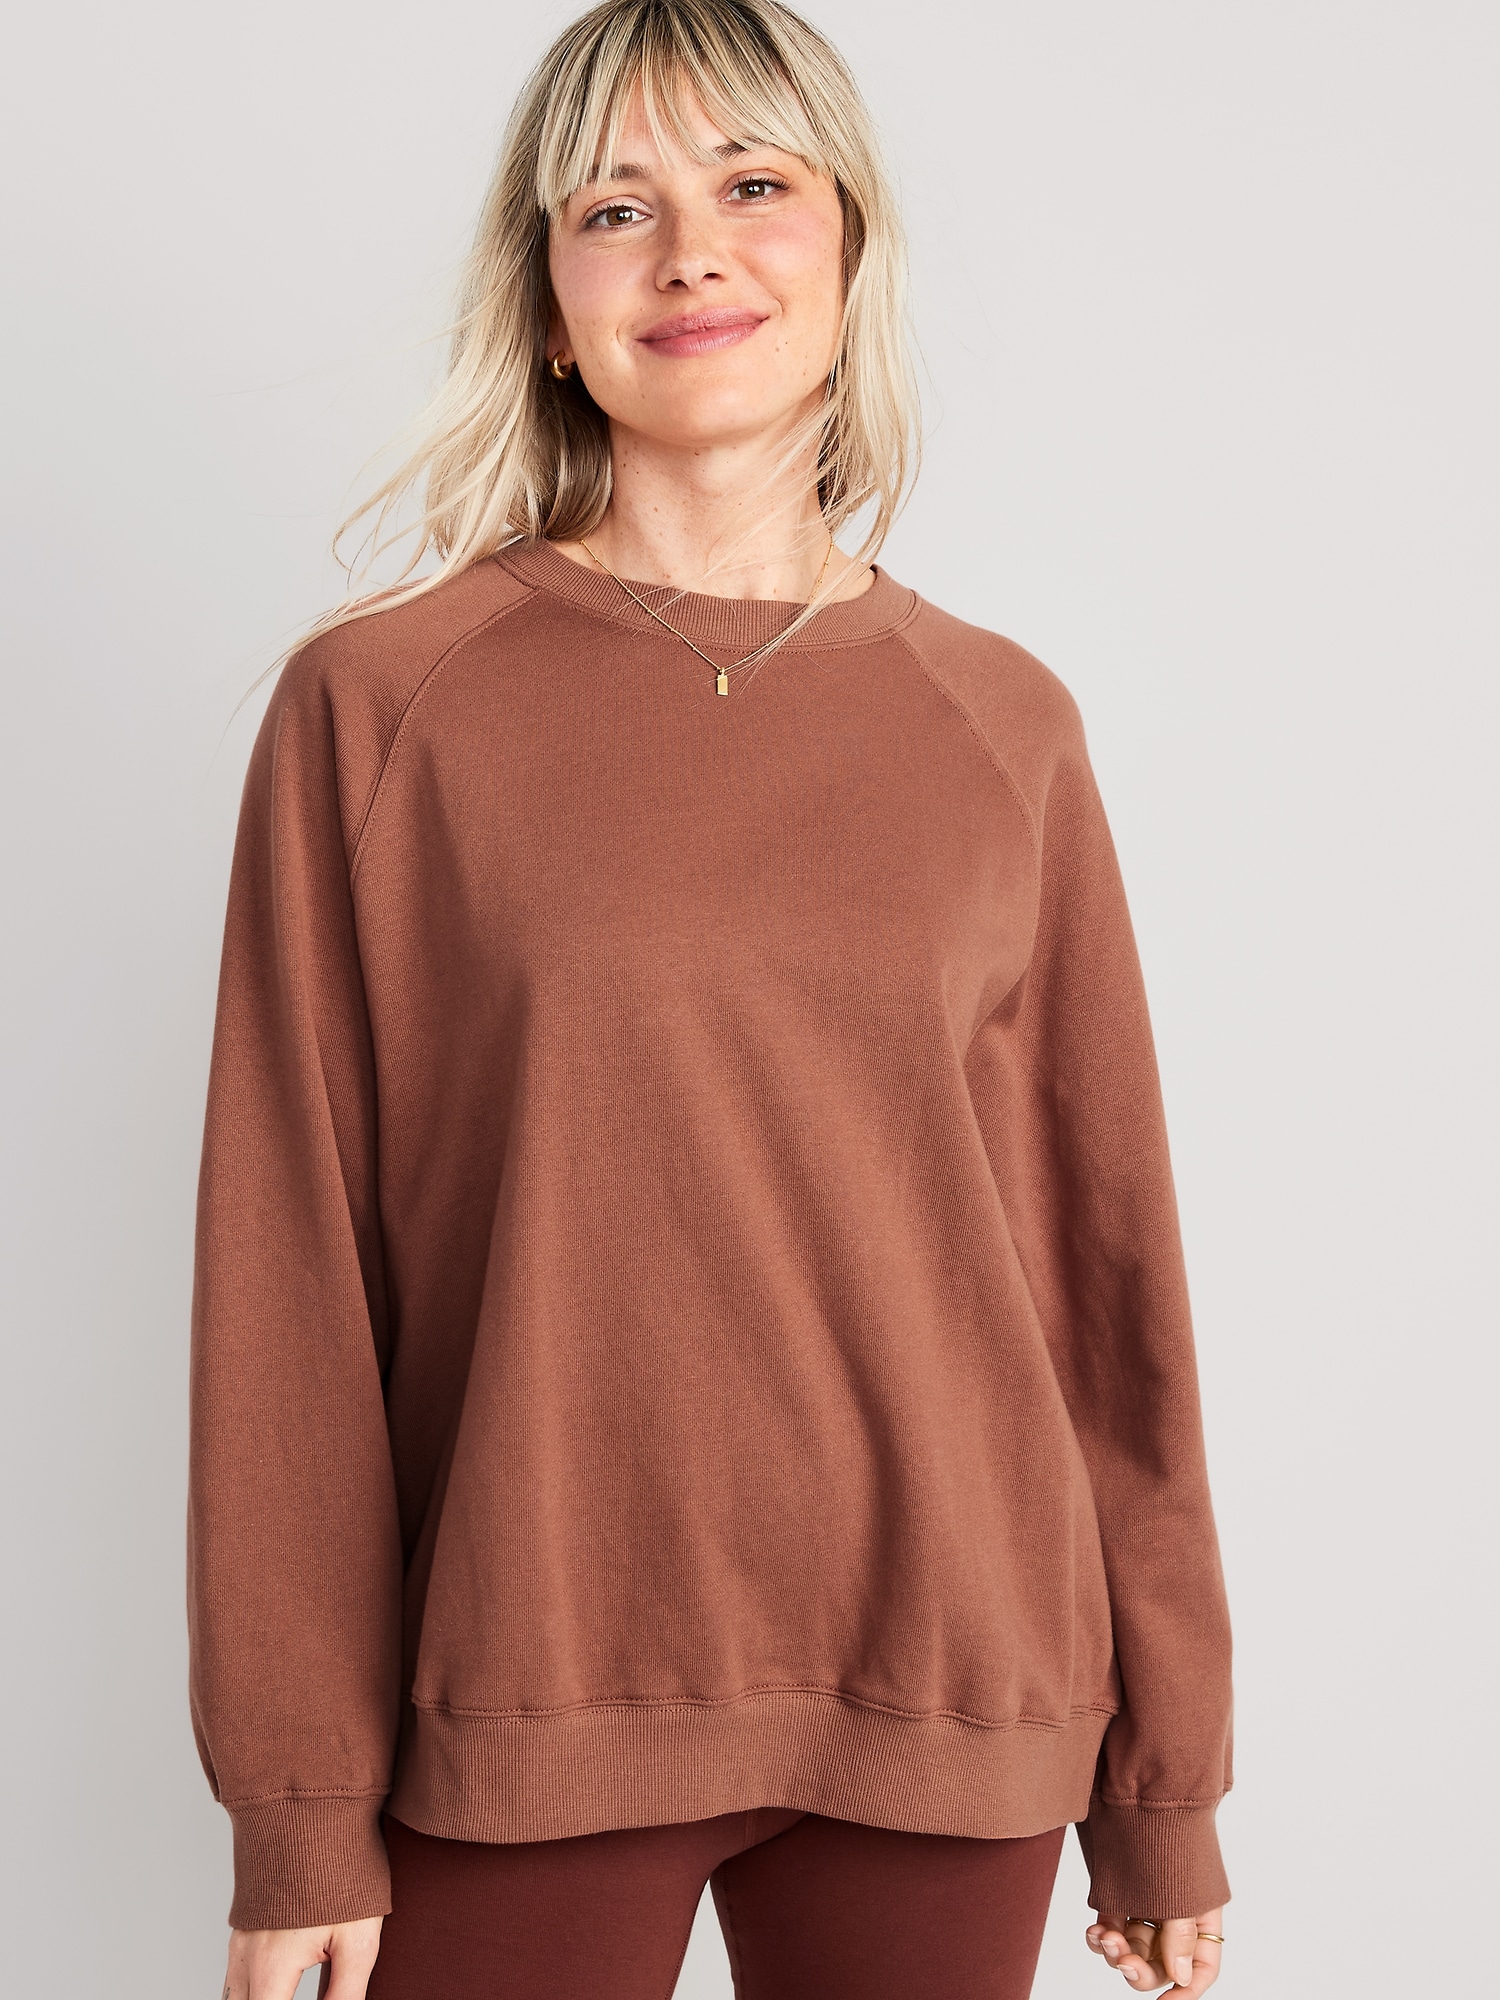 Oversized Vintage Tunic Sweatshirt for Women